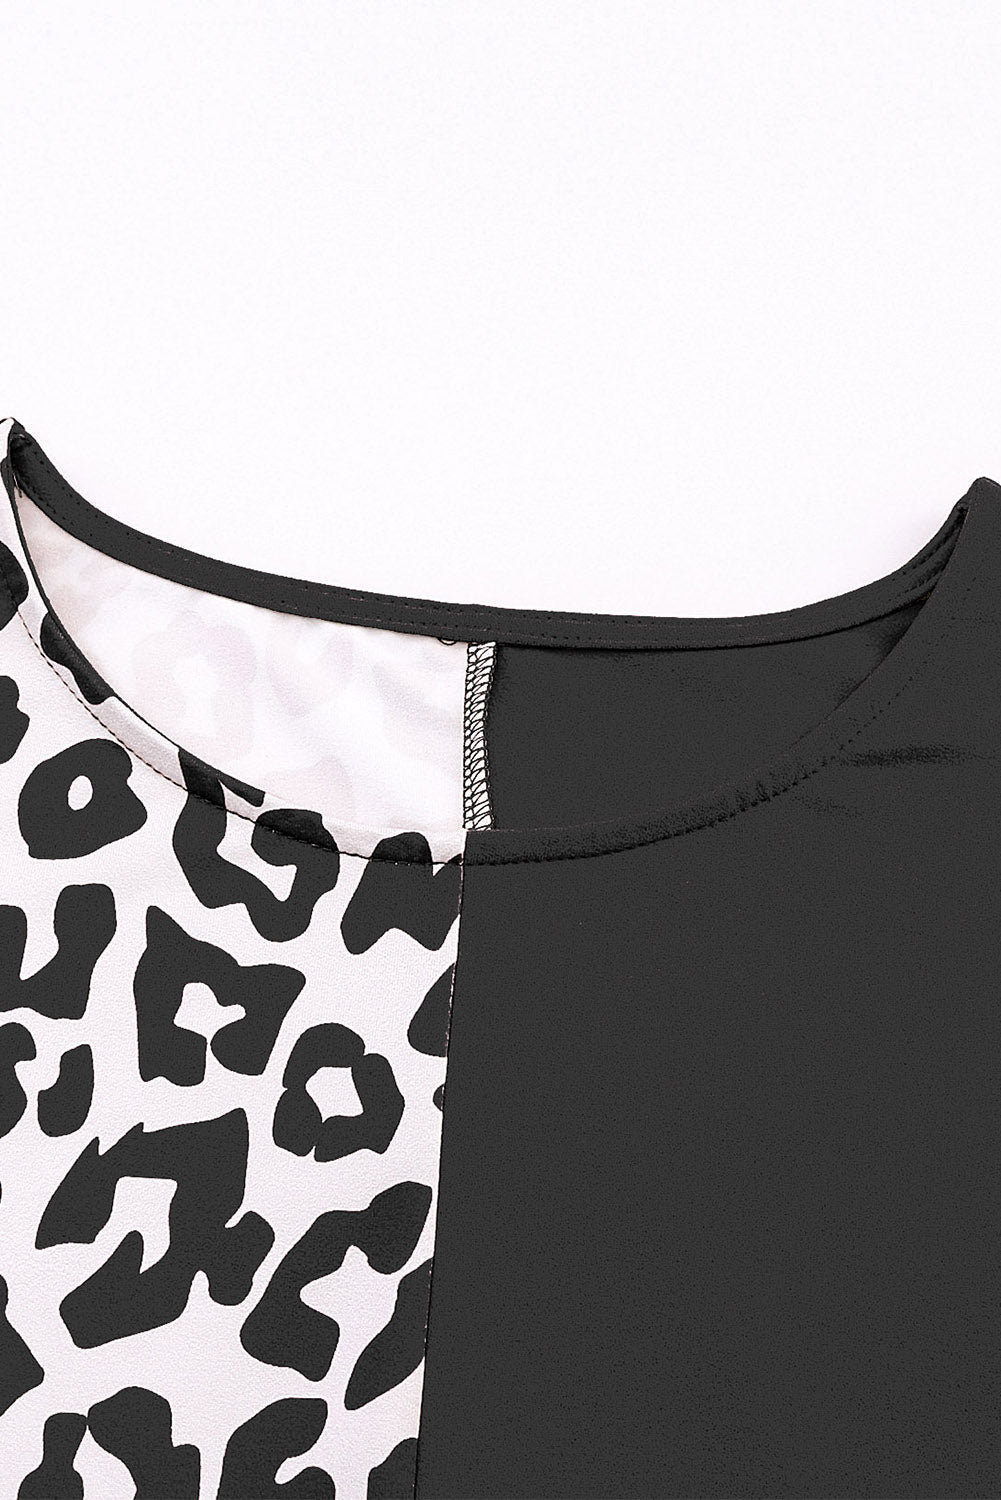 Crna poluleopard majica kratkih rukava u obliku krpica